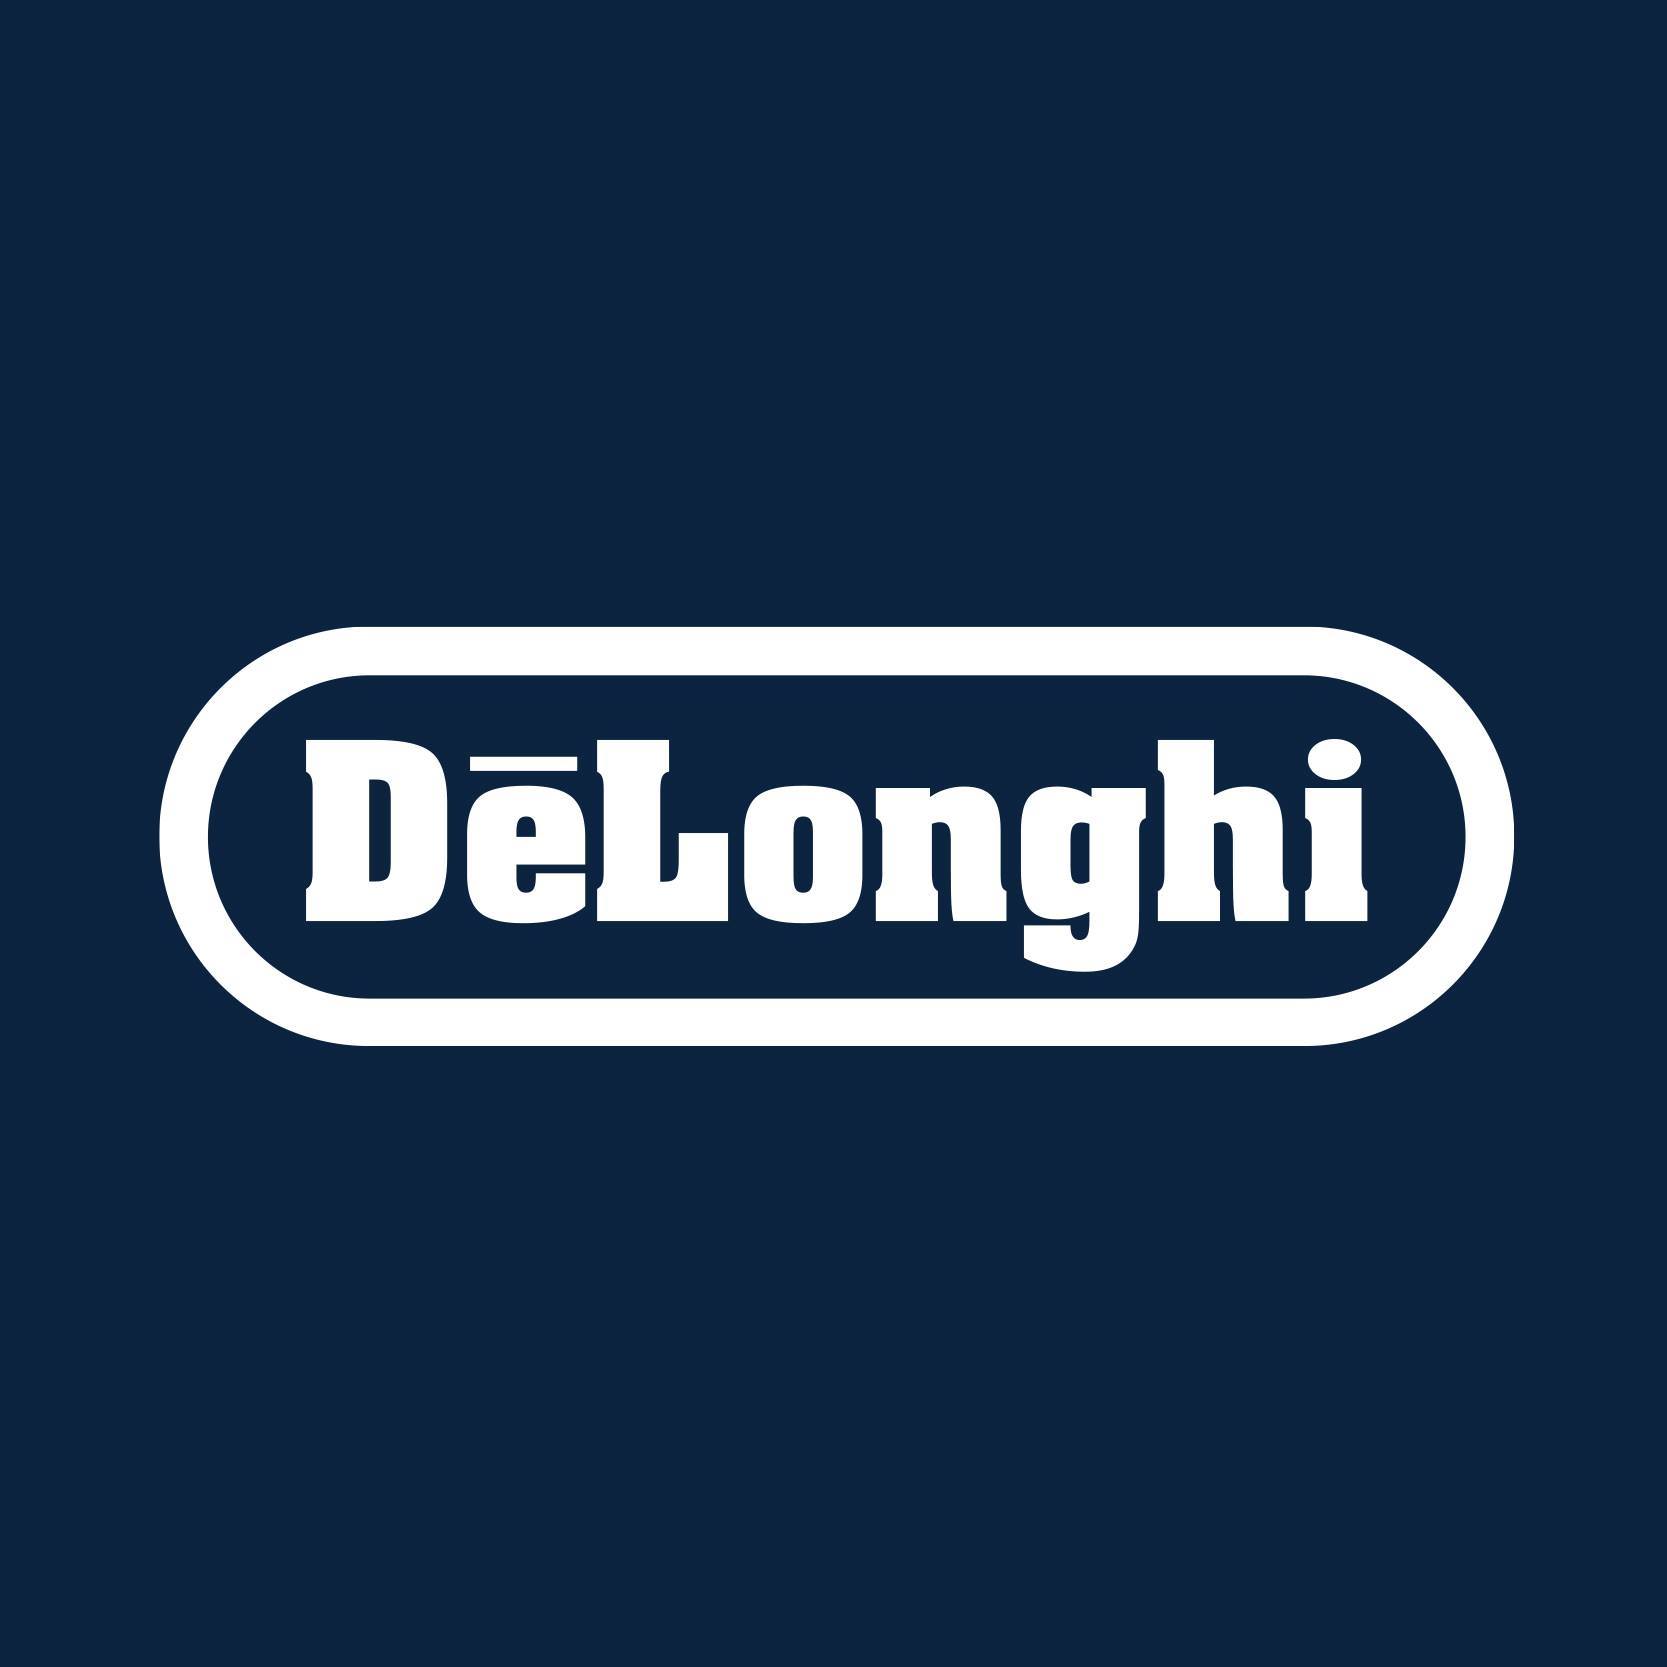 DeLonghi Company Profile